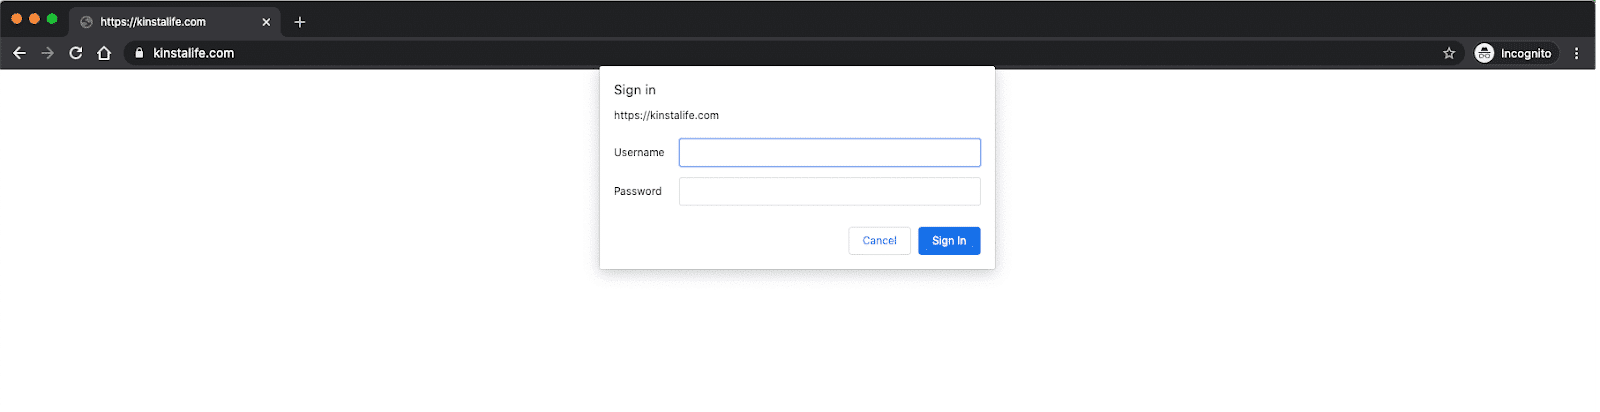 A proteção por senha requer o login antes de visualizar o site em seu navegador.